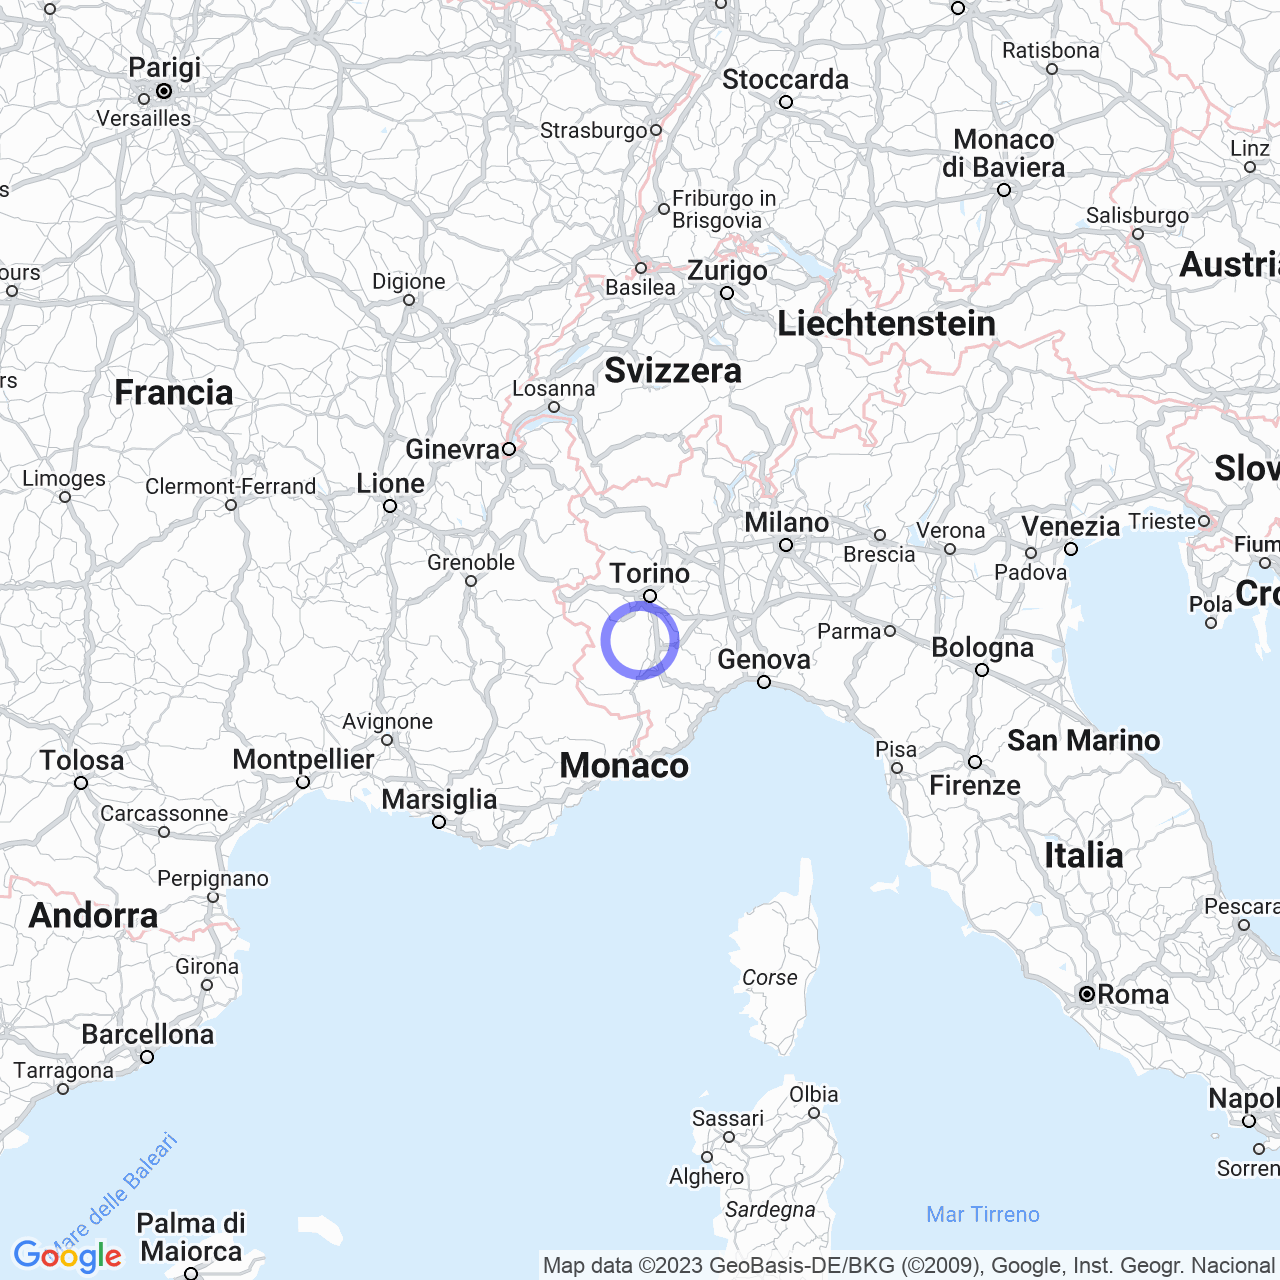 Villanova Solaro: history, geography and society of the Piedmontese municipality.